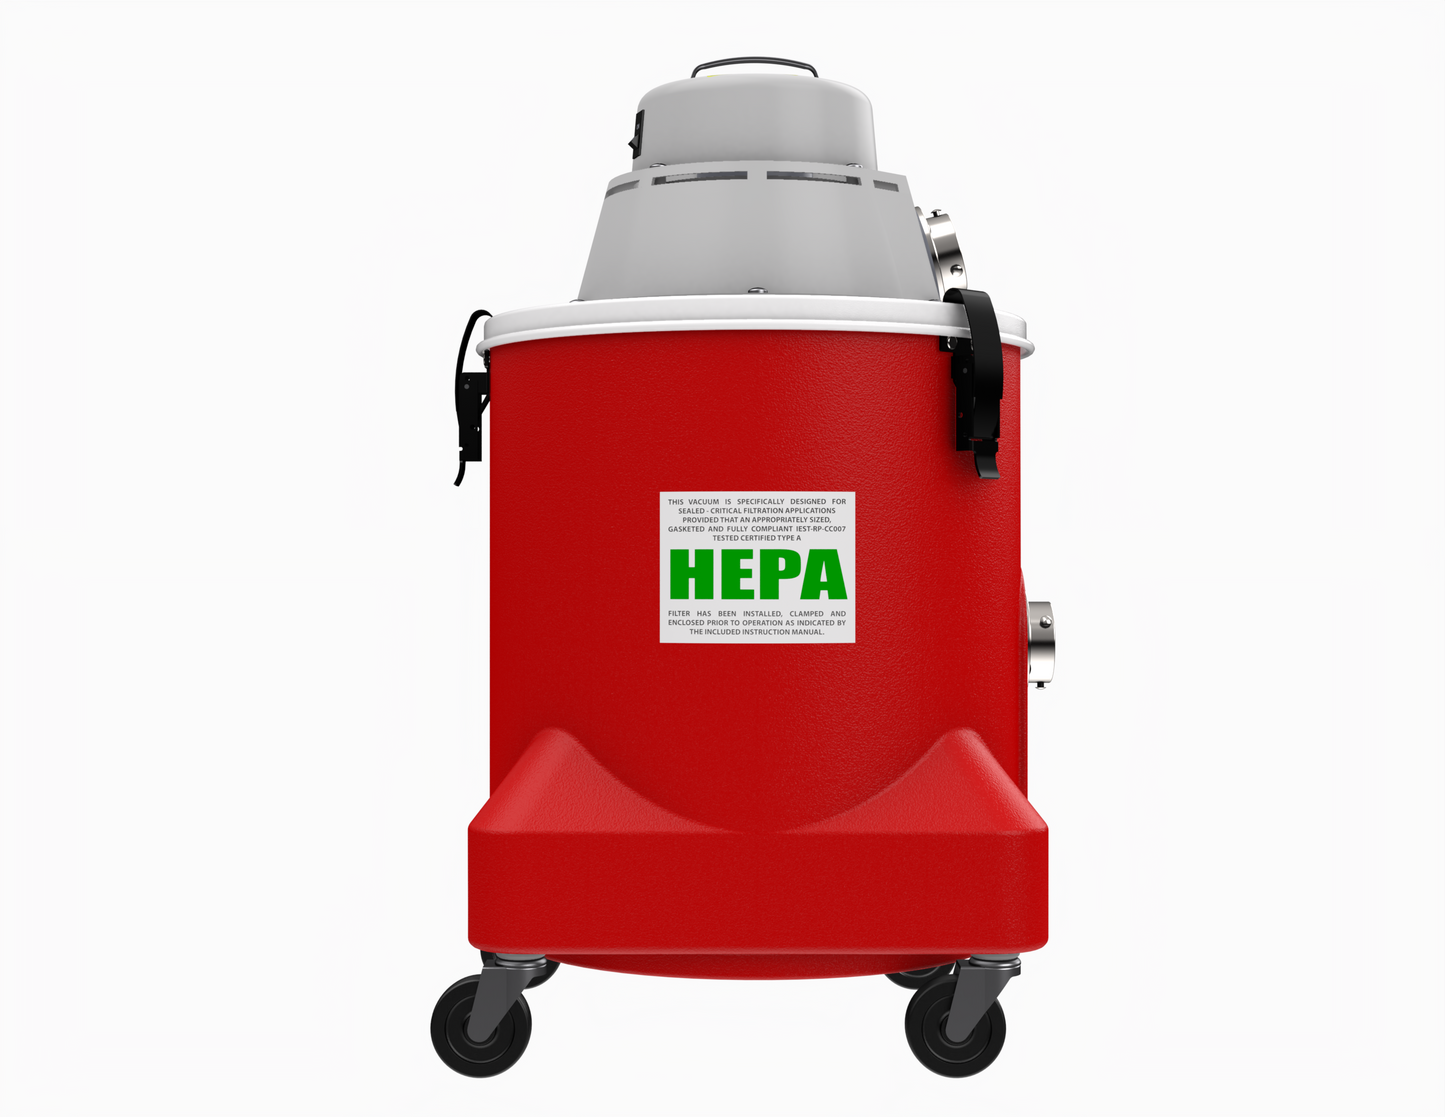 hepa dry vacuum